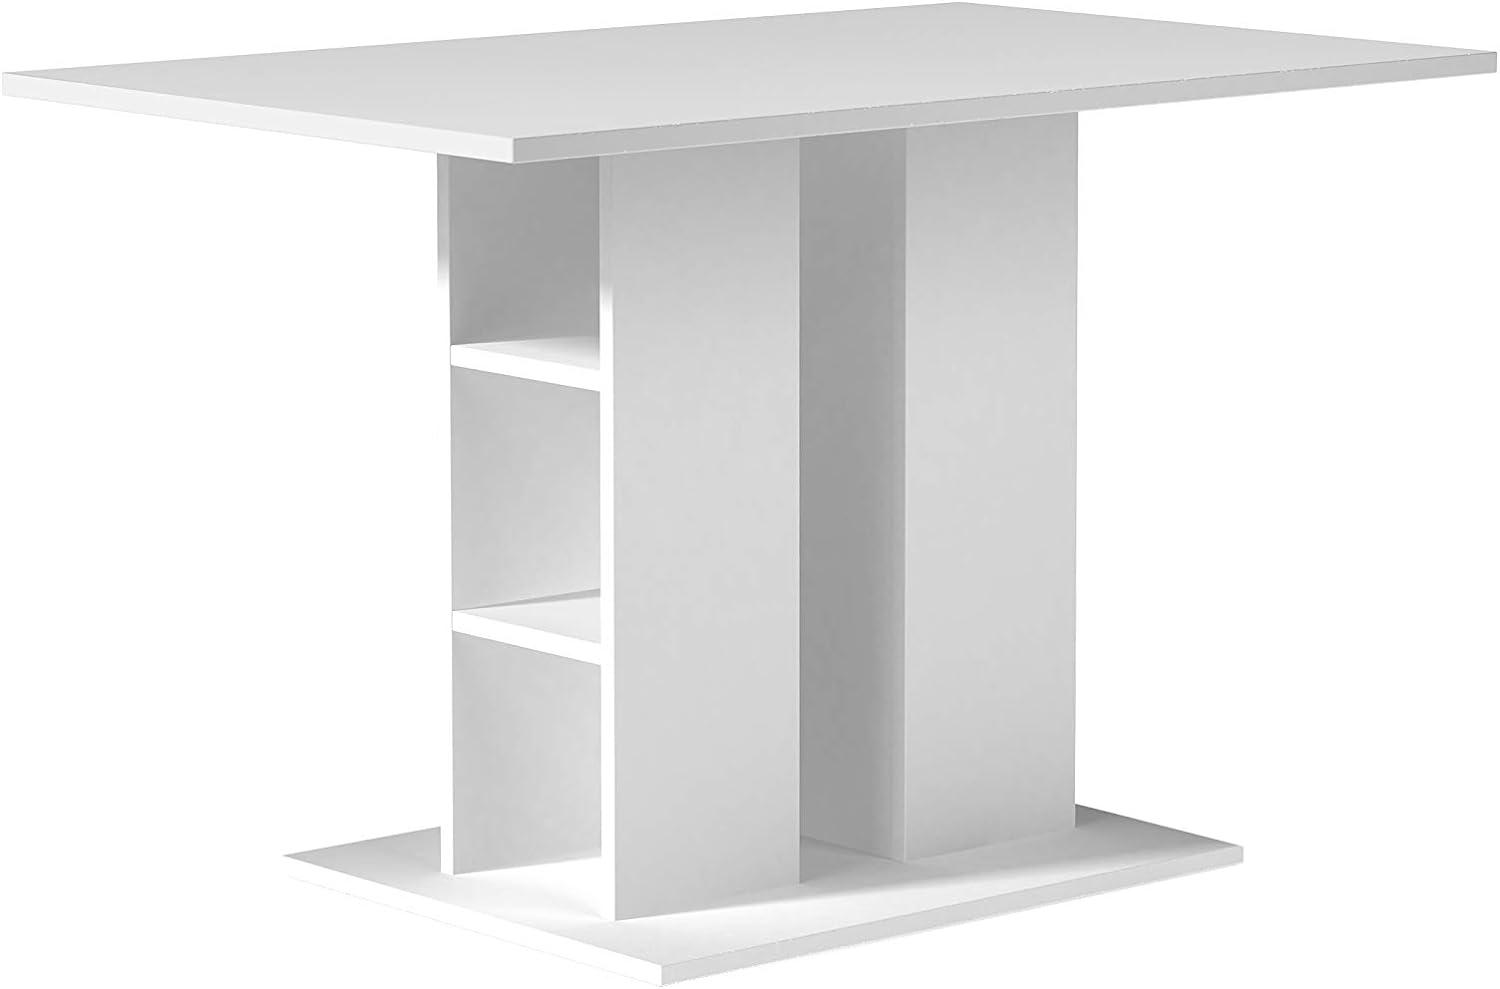 Homexperts Mulan 110 Esstisch, Holzwerkstoff, weiß, 70 x 110, H 75 cm Bild 1